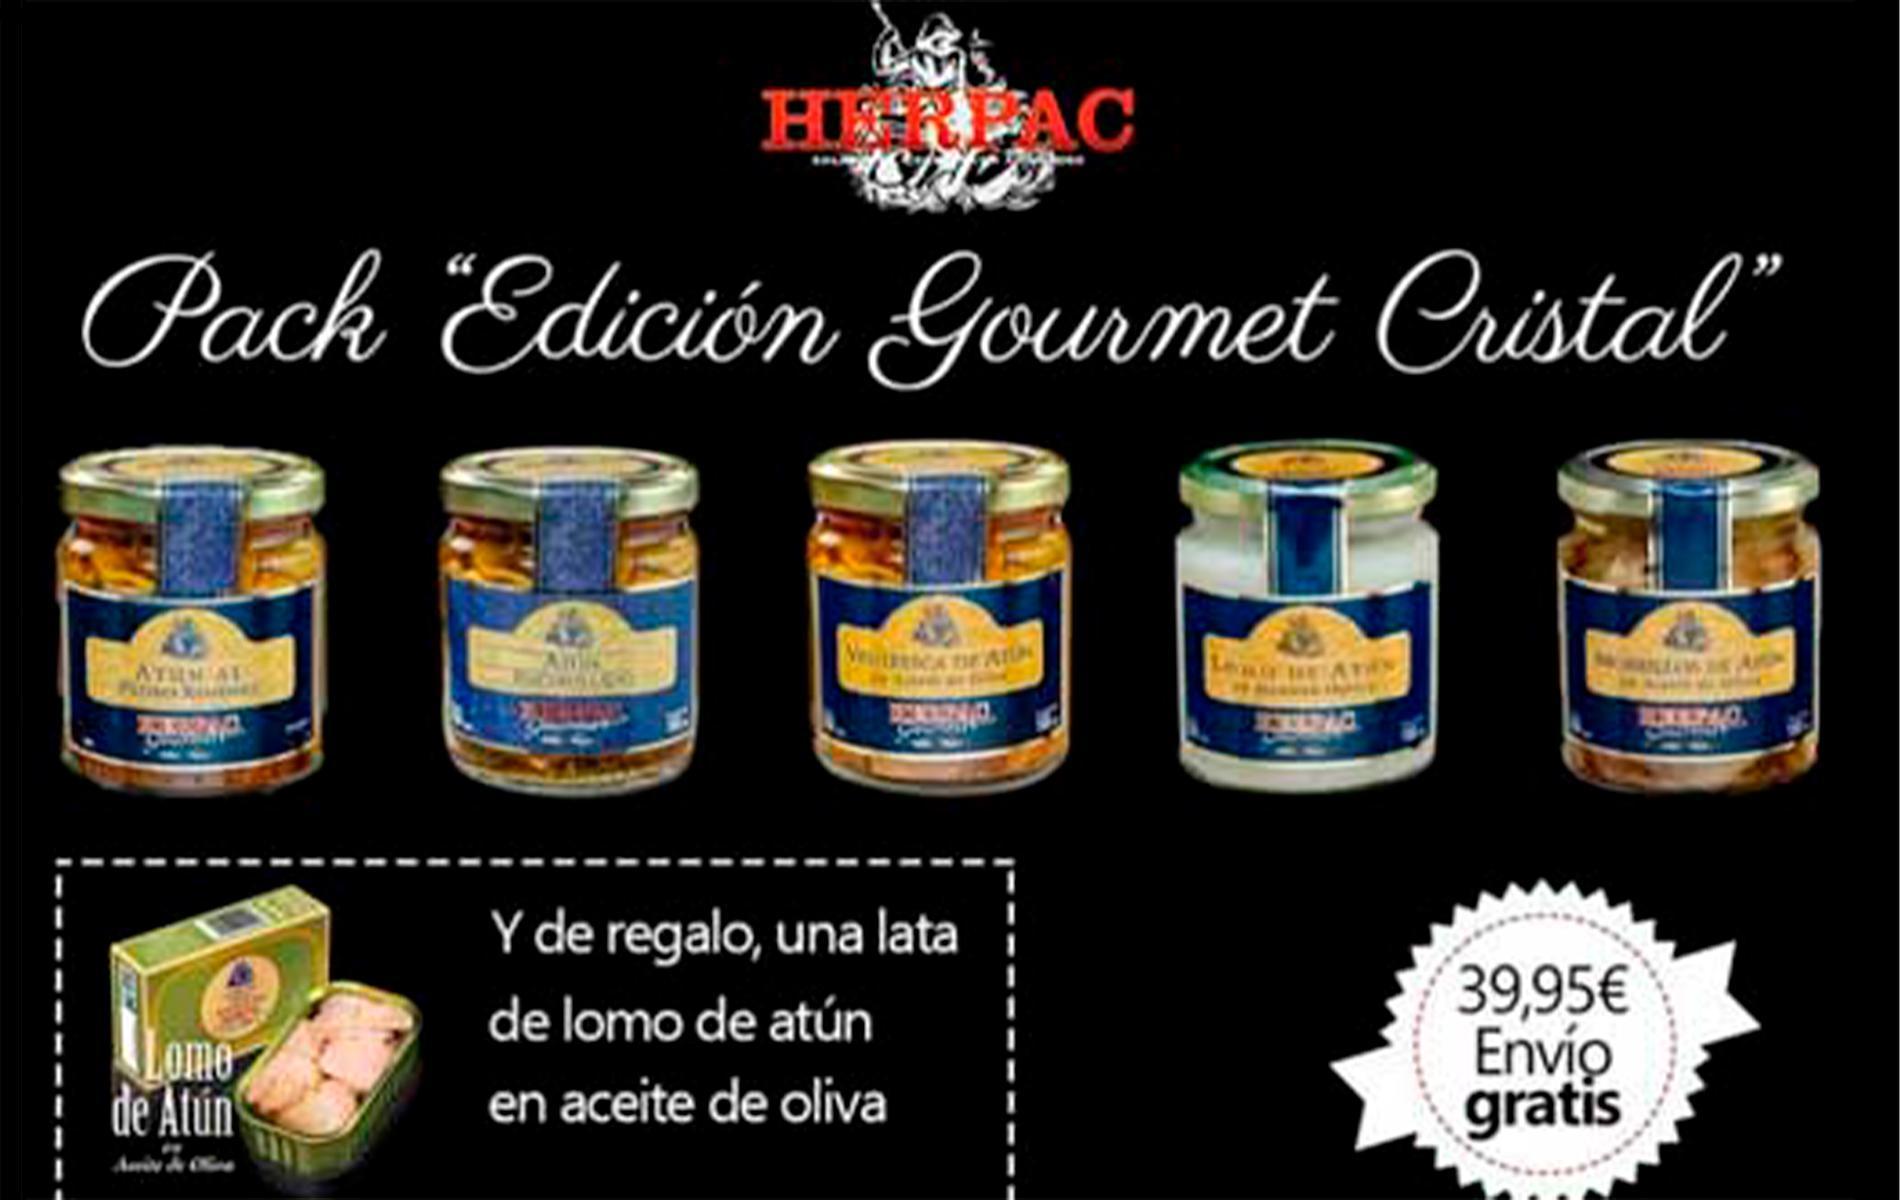 herpac lanza su exclusivo pack “edición gourmet cristal”